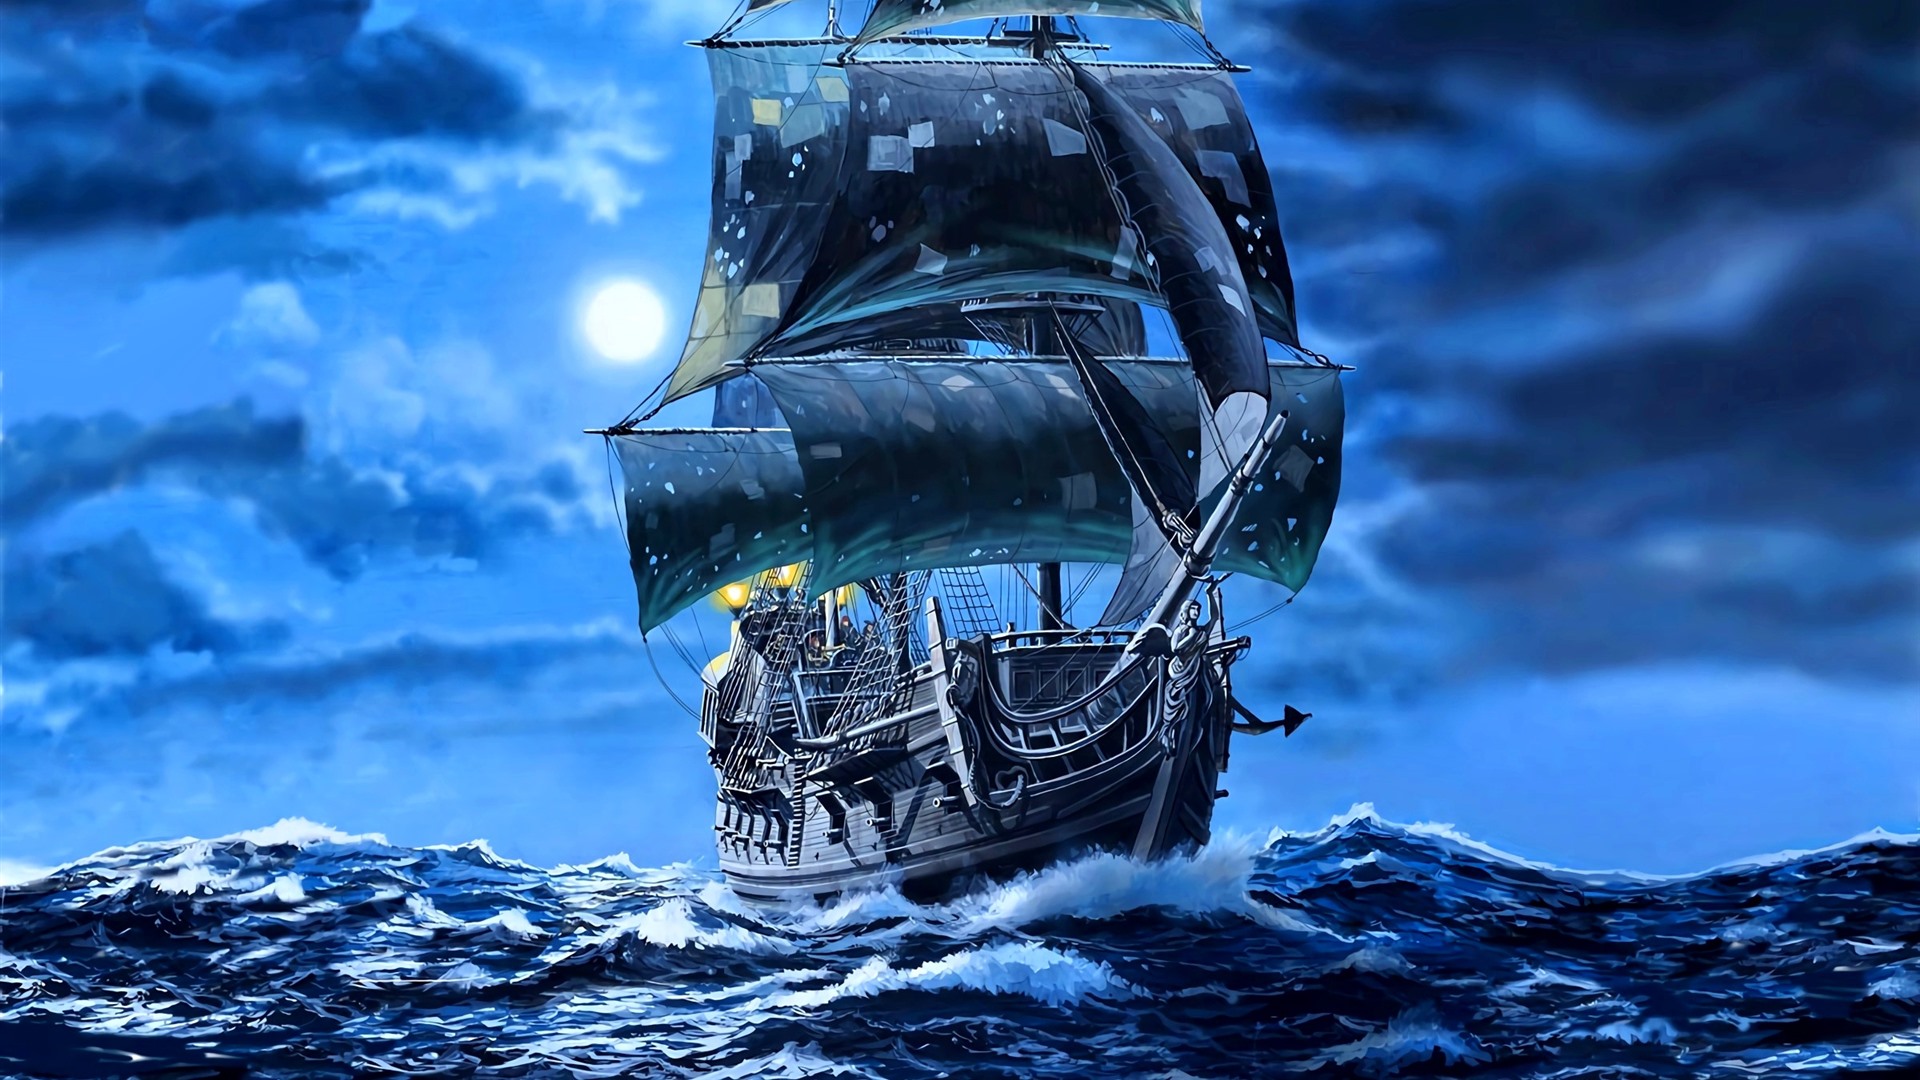 黒真珠船のhdの壁紙,車両,ガレオン船,輸送する,船,幽霊船